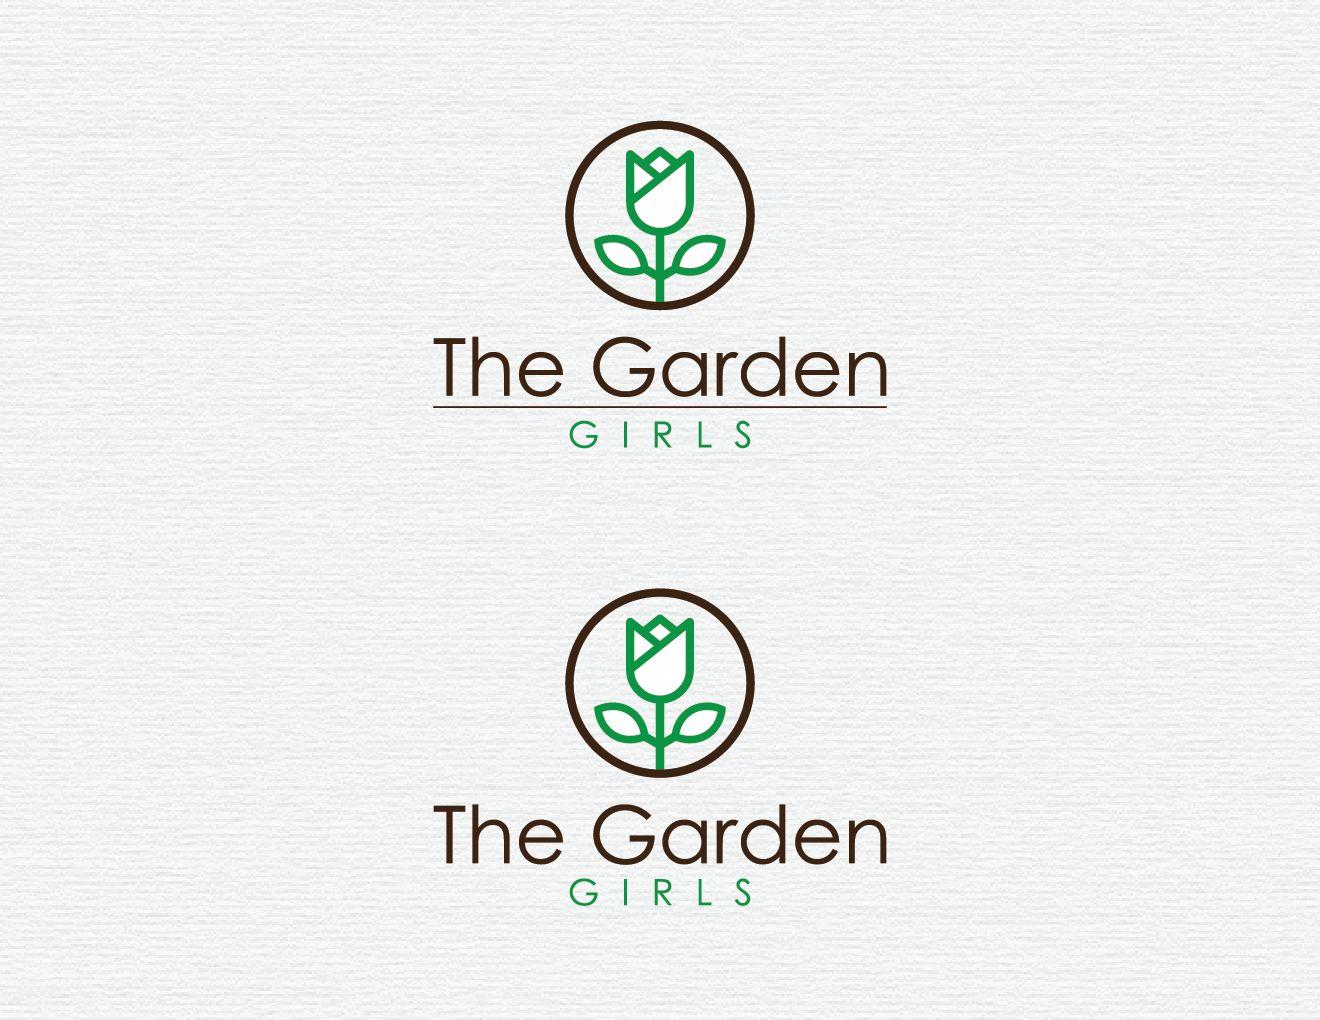 Gardener Logo - Elegant, Modern, Gardener Logo Design for The Garden Girls with